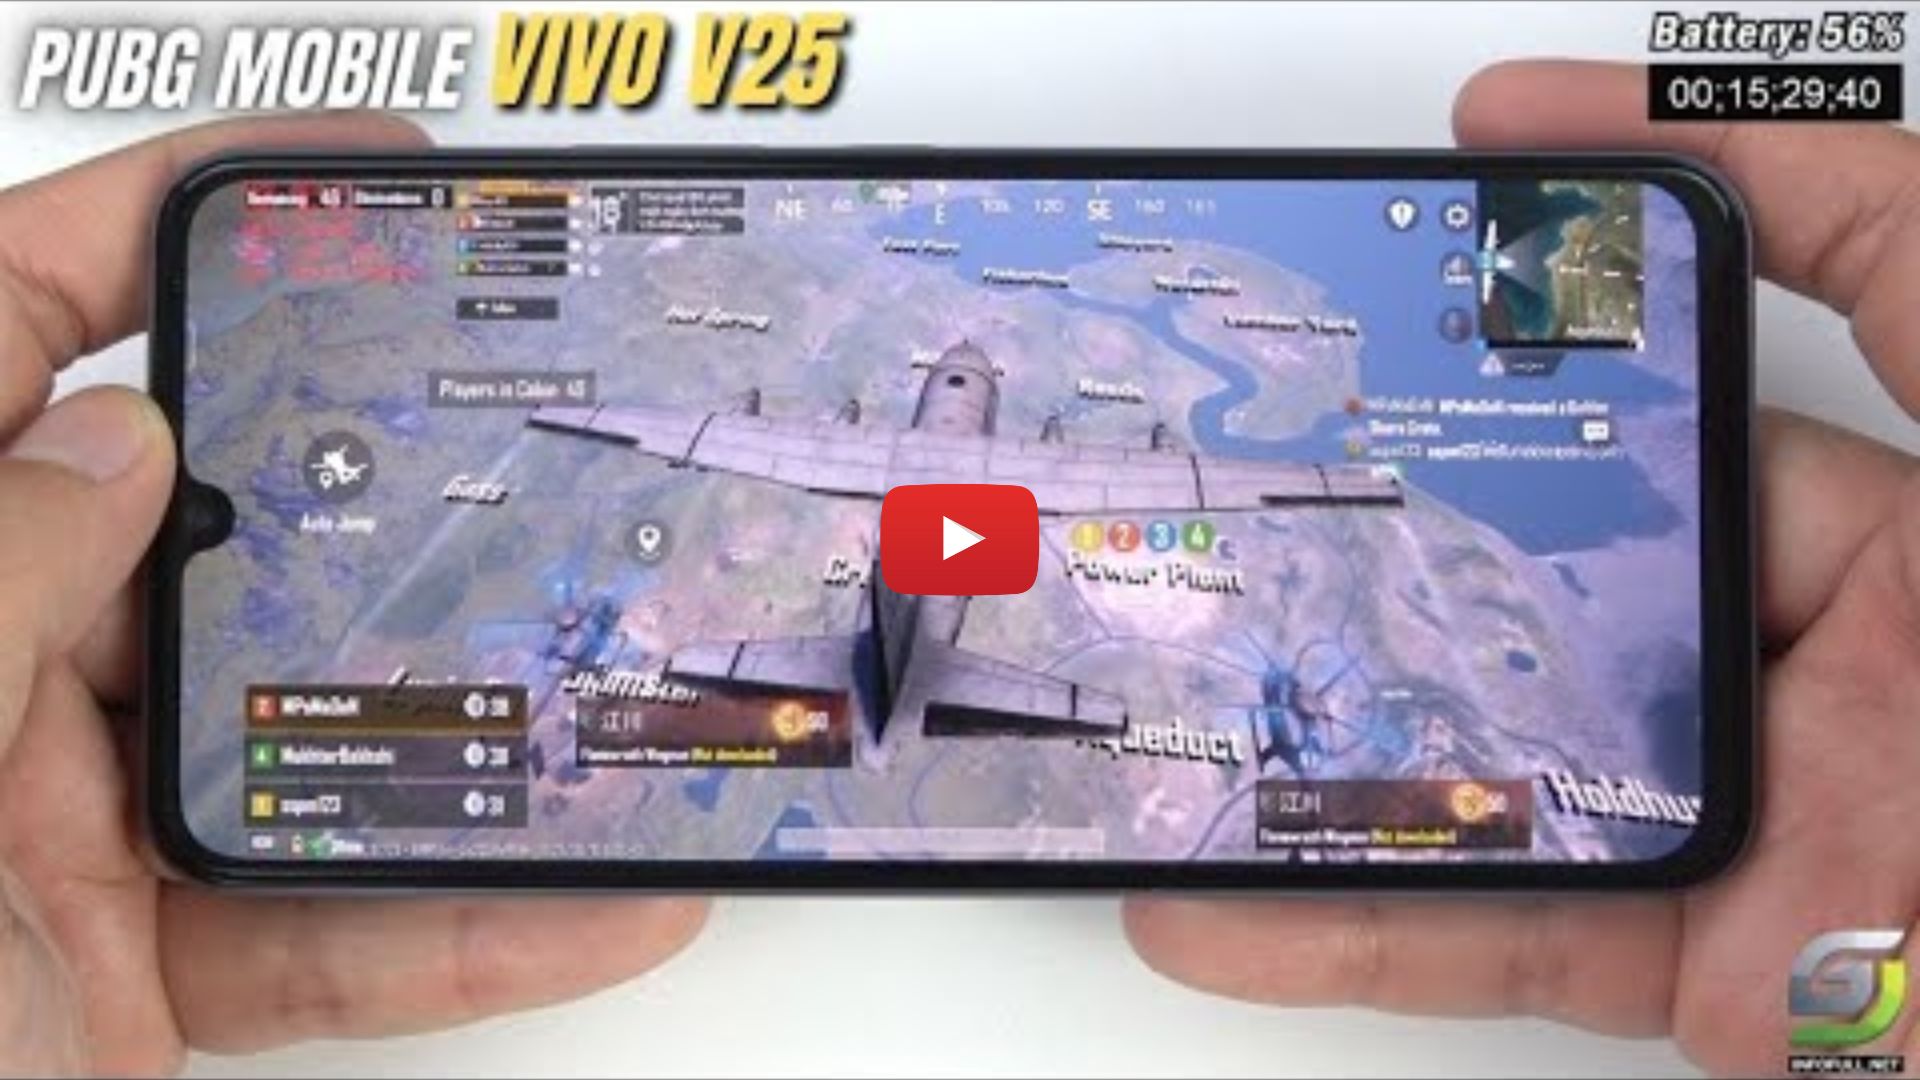 Vivo V25 đã được trang bị bộ xử lý Dimensity 900 mới nhất, mang lại trải nghiệm chơi game tuyệt vời cho những người yêu thích PUBG Mobile. Hãy cùng xem những hình ảnh đầu tiên của Vivo V25 với game PUBG Mobile trong năm 2024 để cảm nhận sự mượt mà và đầy hấp dẫn của trò chơi này trên một chiếc điện thoại đó.